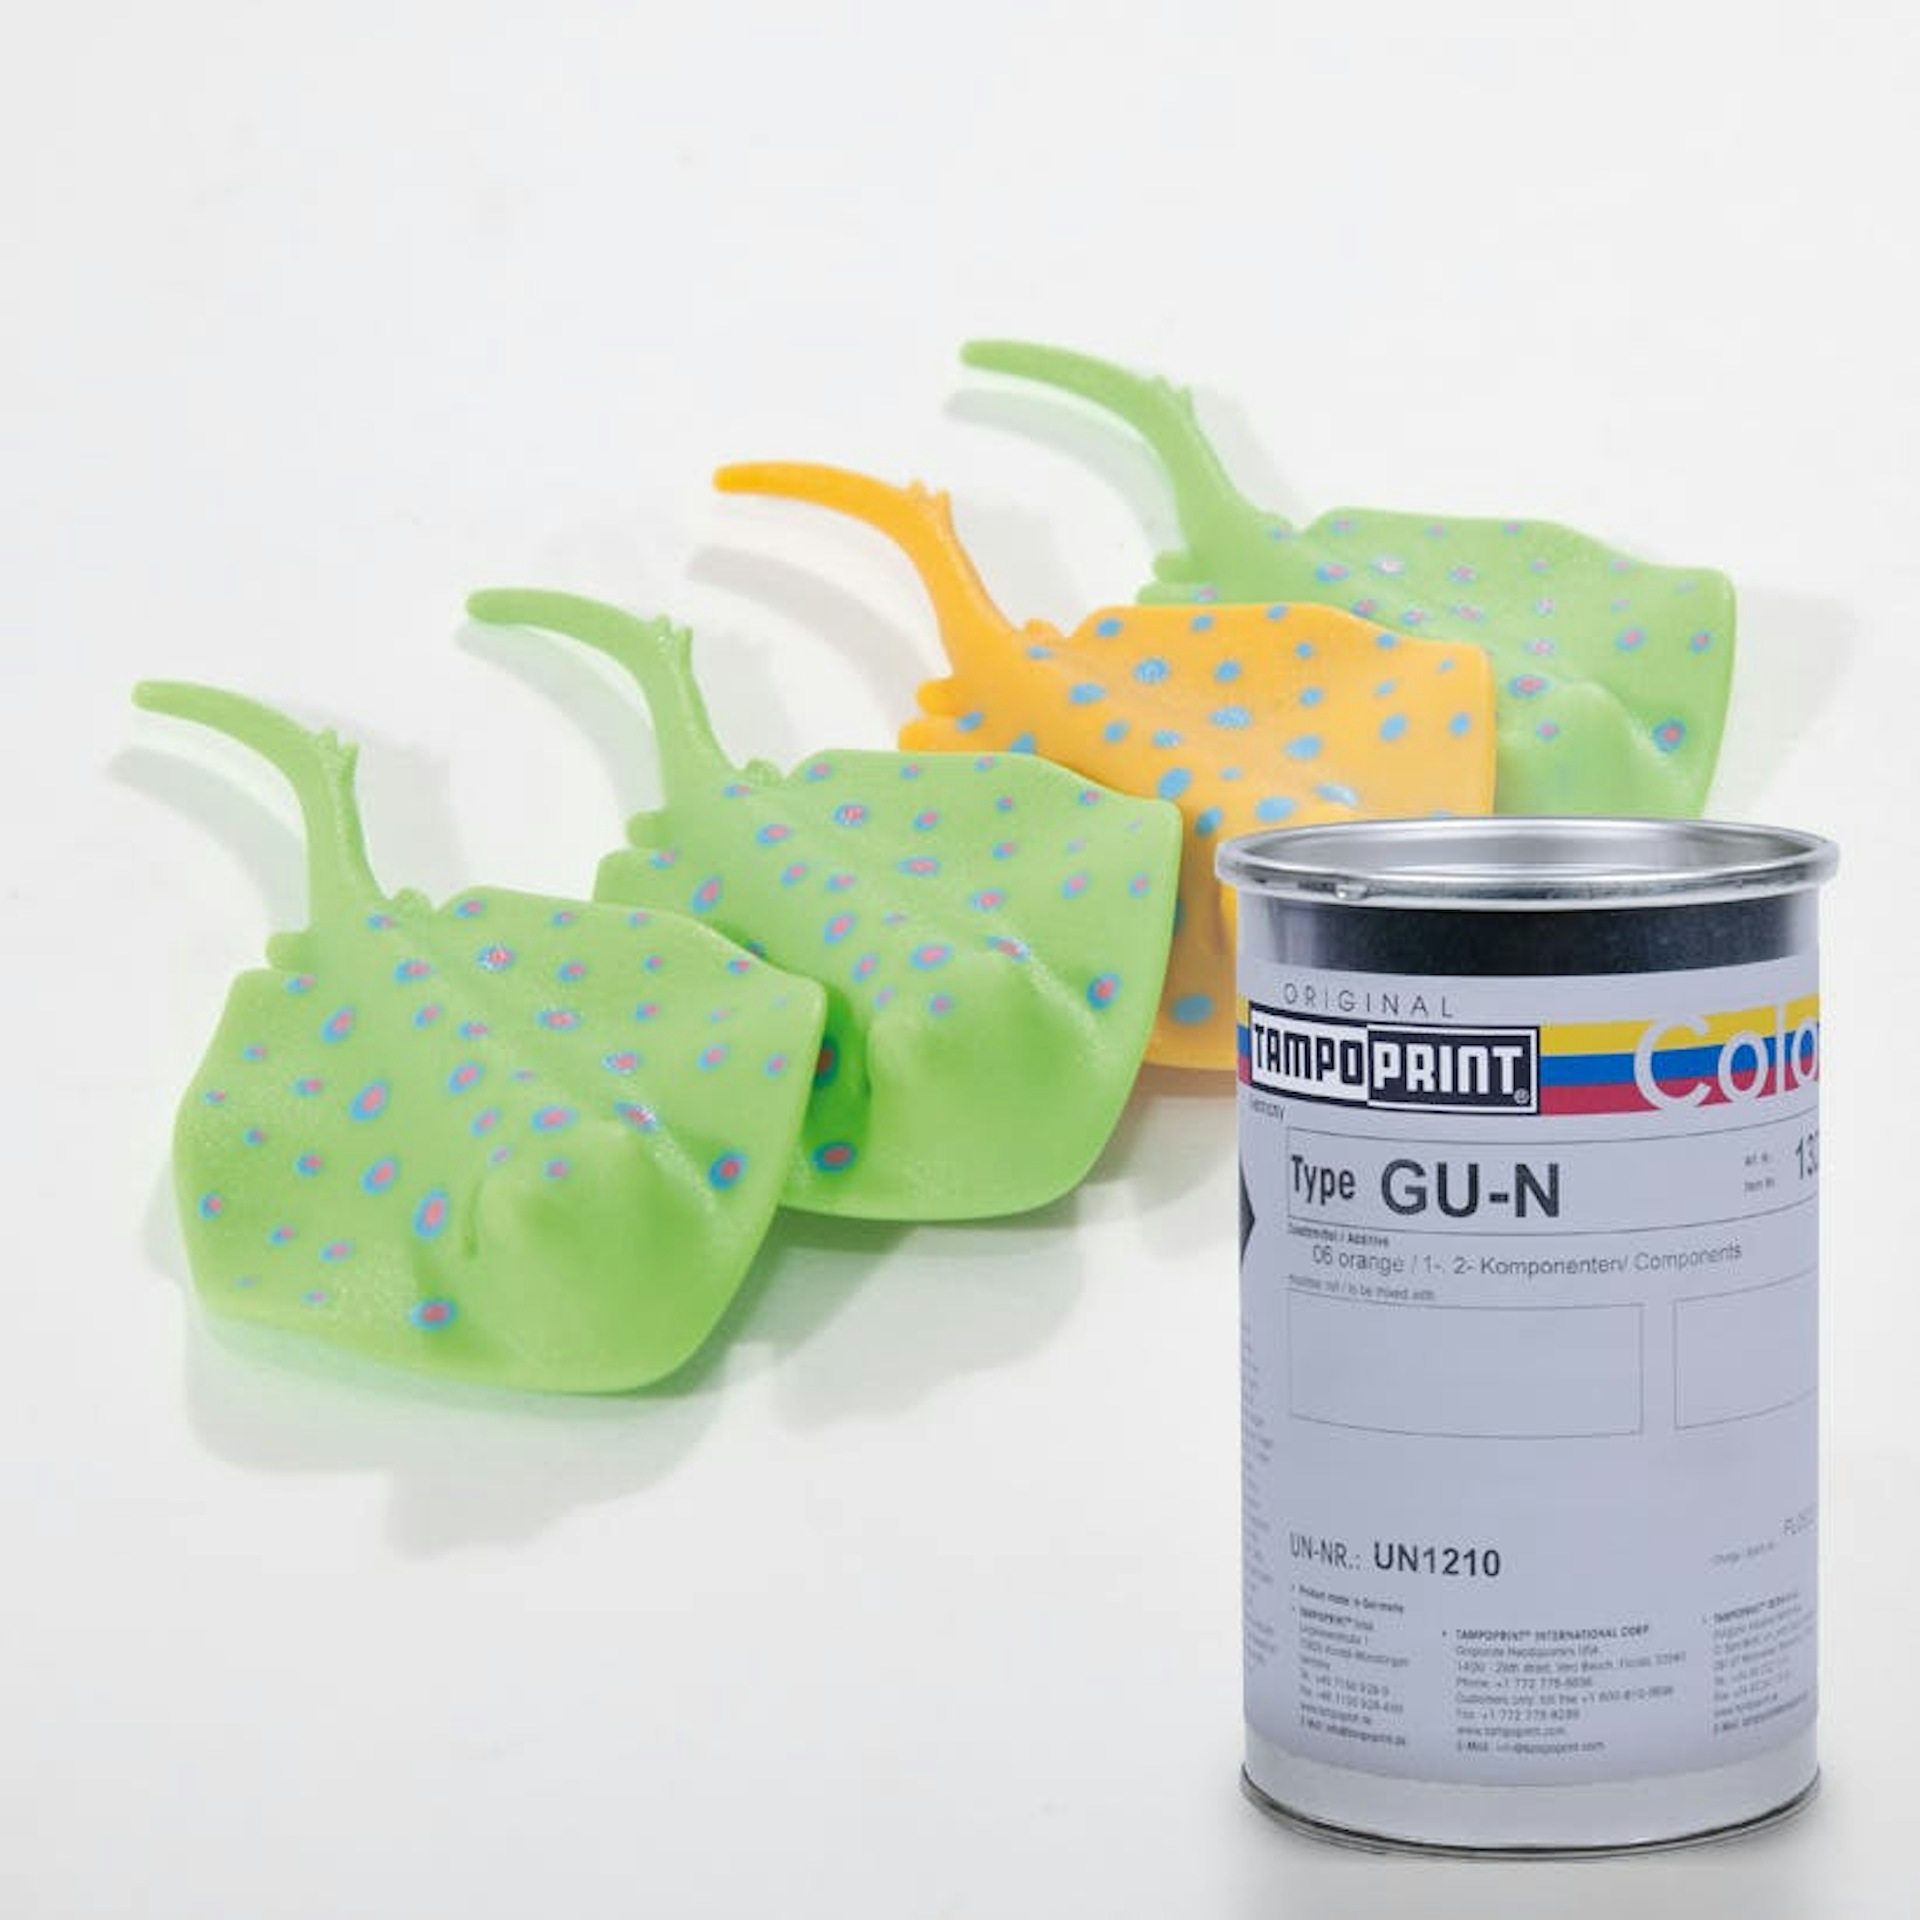 Eine Type GU-N Tampondruckfarbdose mit Kinderspielzeug aus Gummi im Hintergrund.